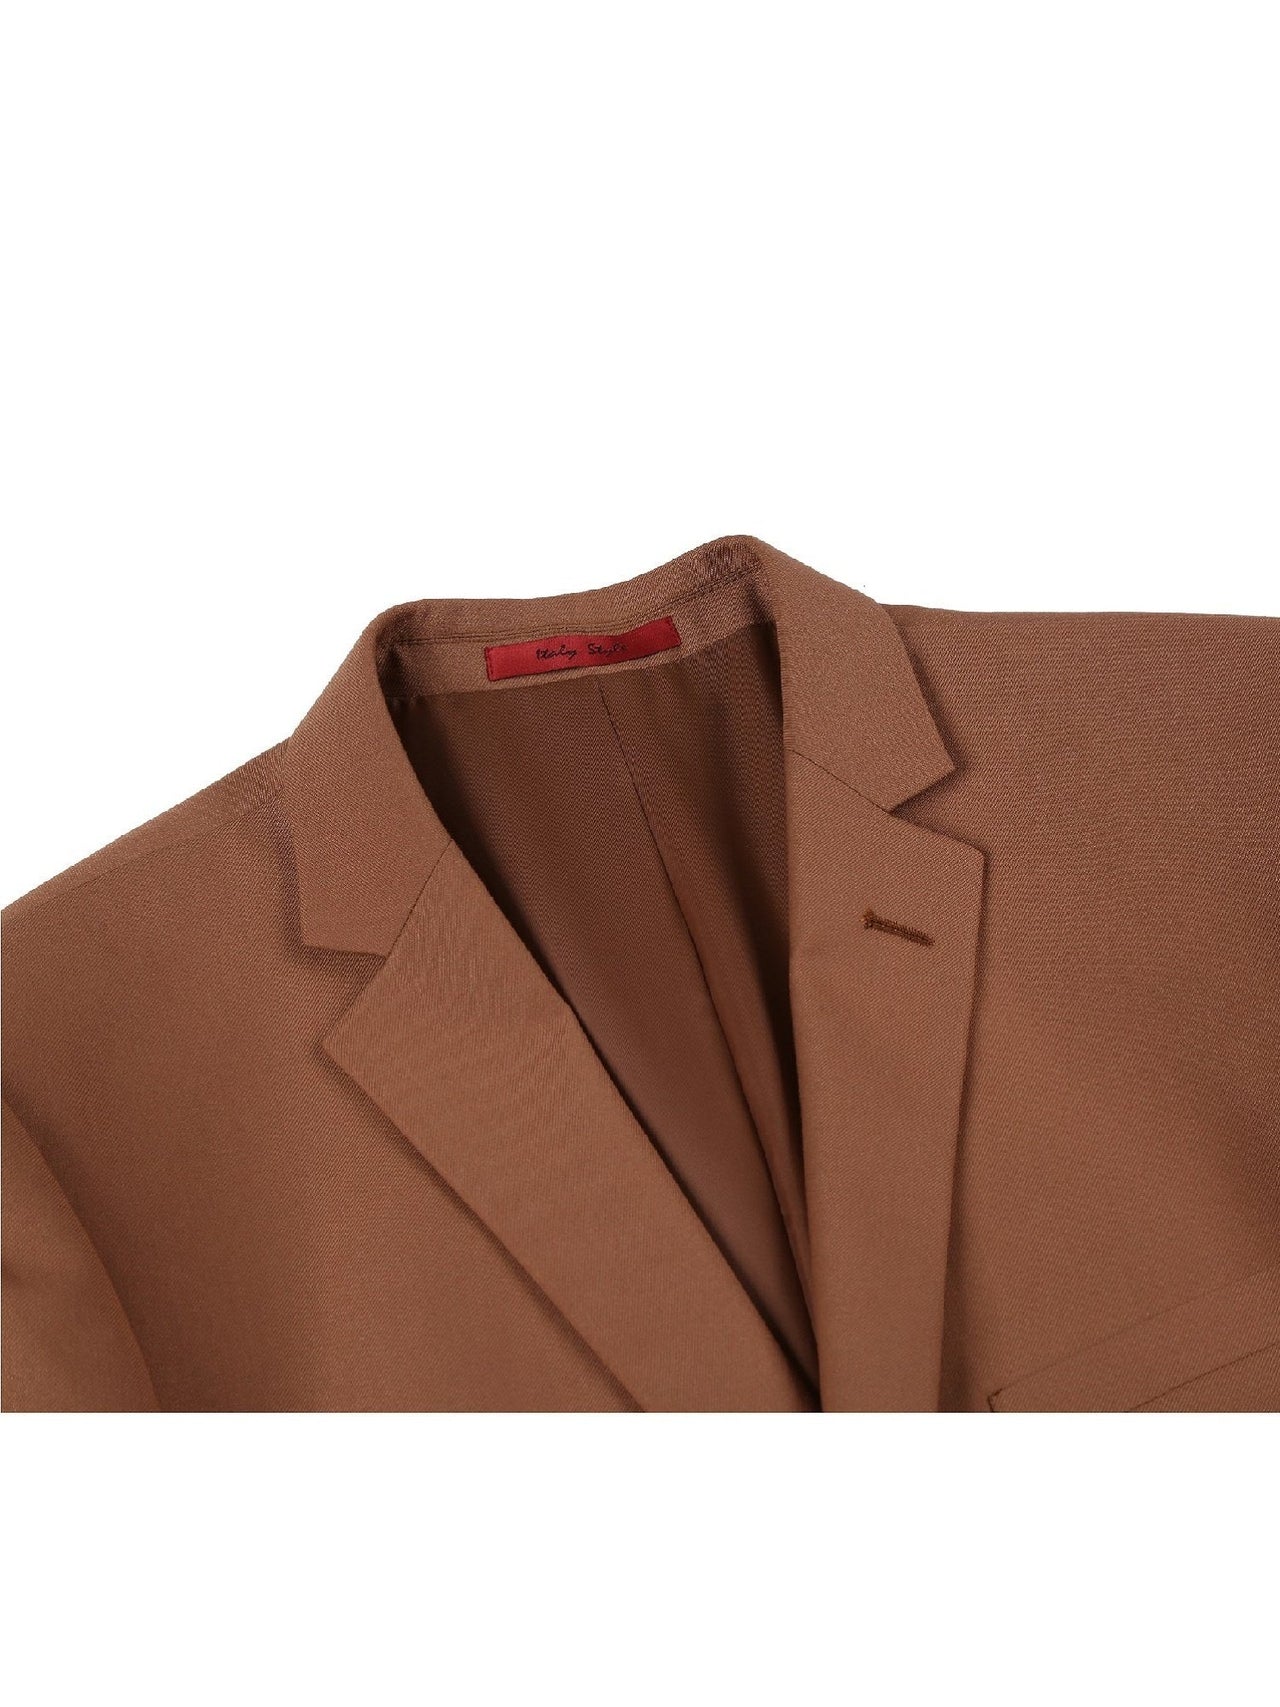 Men's 2-Piece Slim Fit Single Breasted Notch Lapel Suit